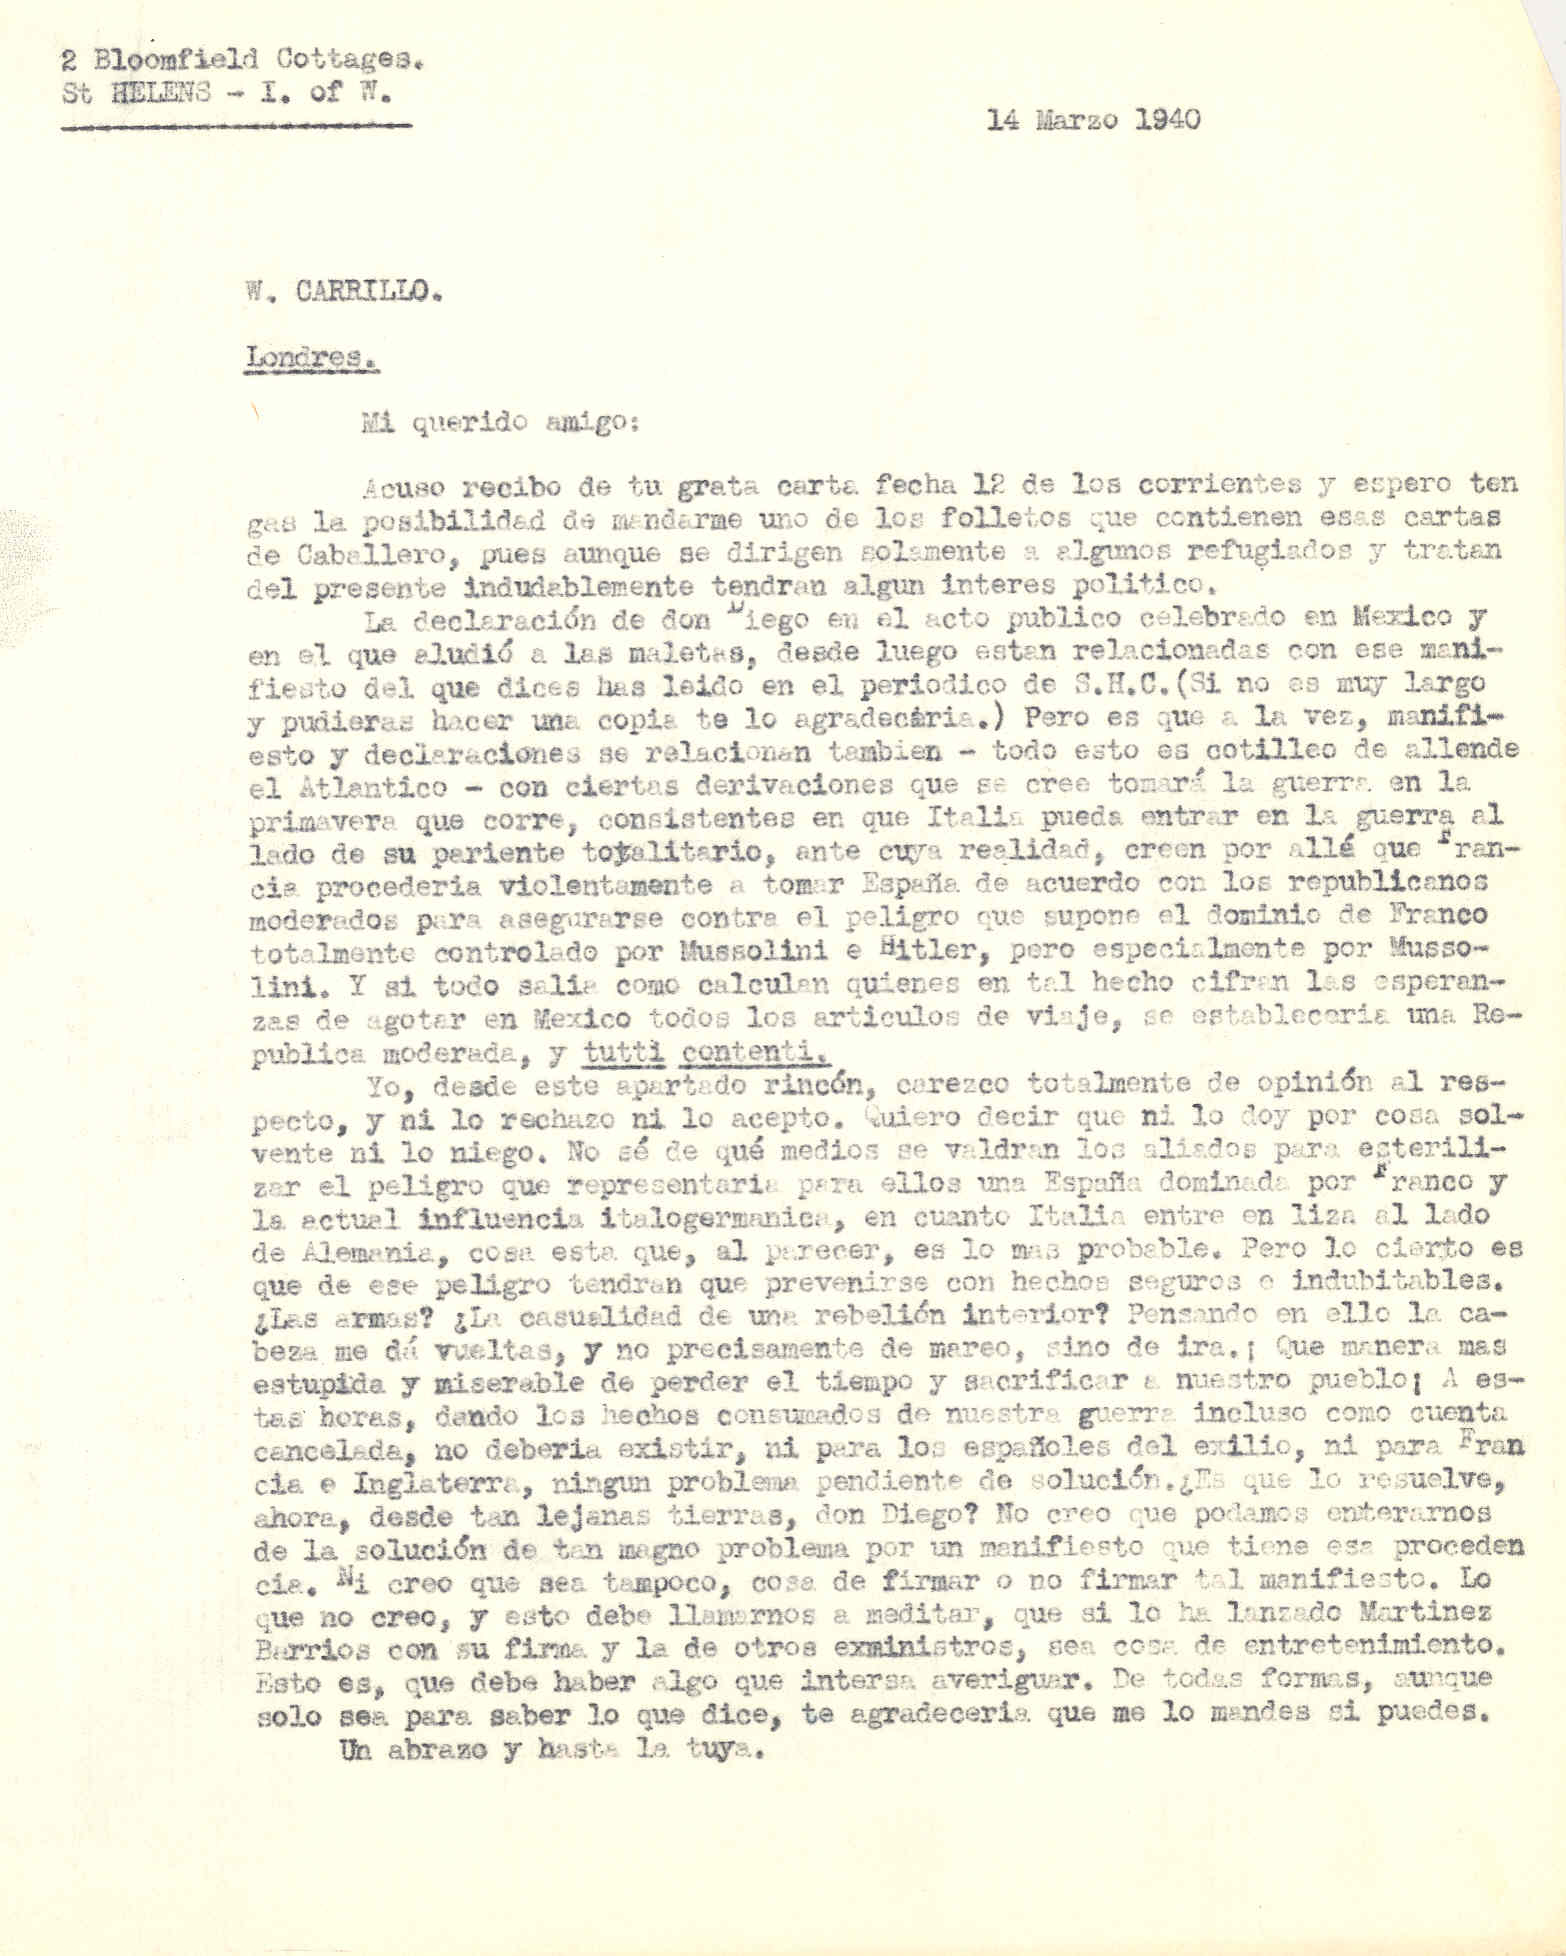 Carta a Wenceslao Carrillo en la que habla de lo que dice el manifiesto y declaraciones de Martínez Barrio, sobre la posibilidad de que España aliada a Italia y Alemania entrara en guerra.